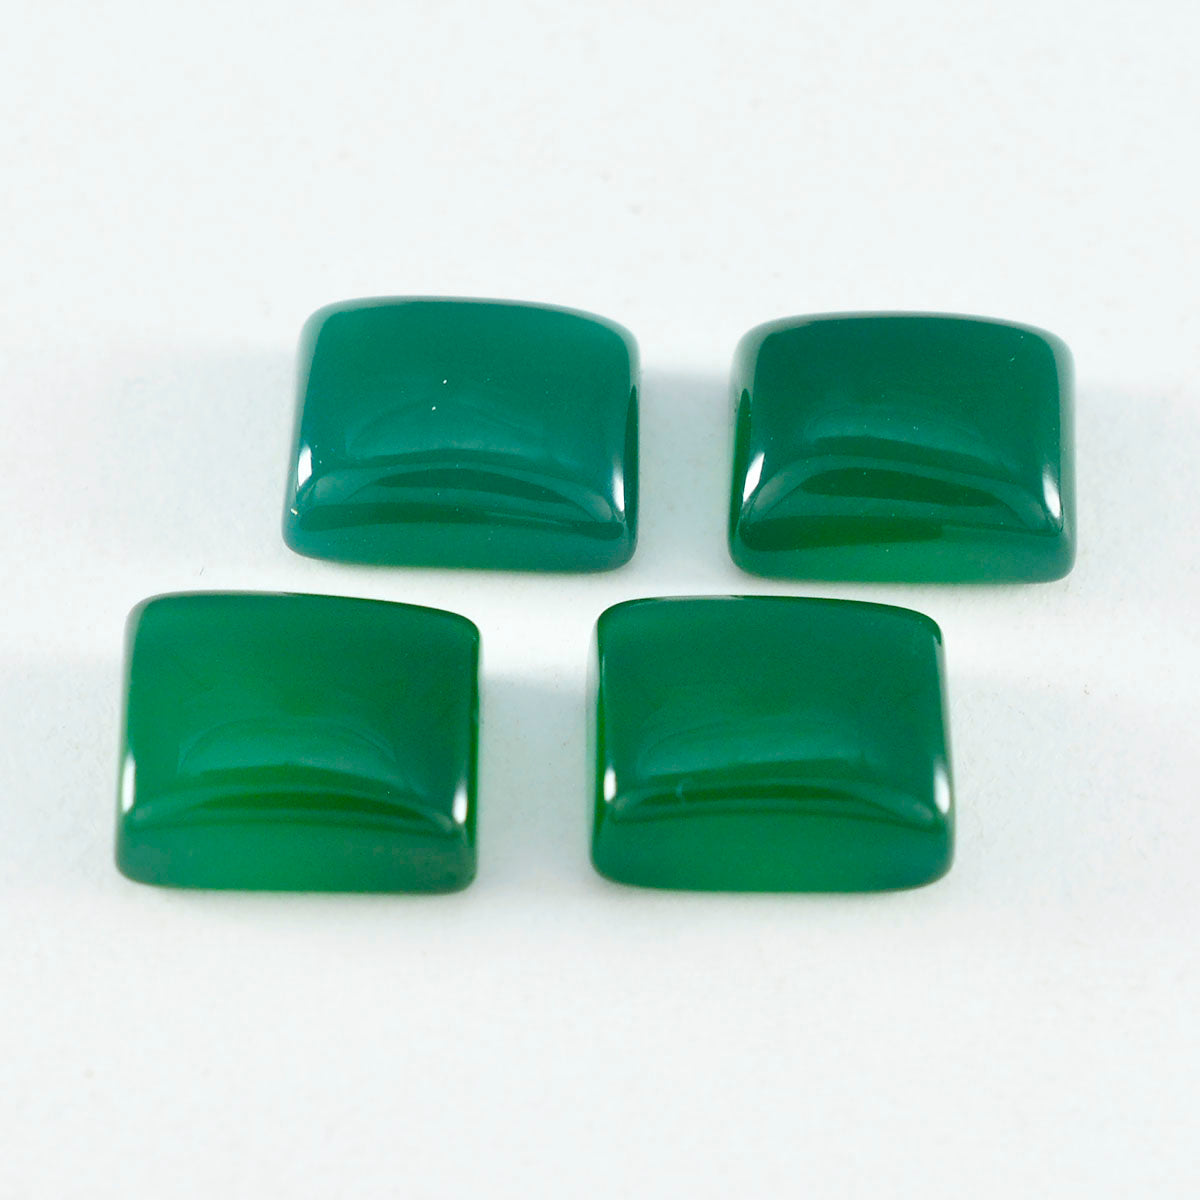 Riyogems 1PC Green Onyx Cabochon 12x16 mm Octagon Shape excellent Quality Gemstone